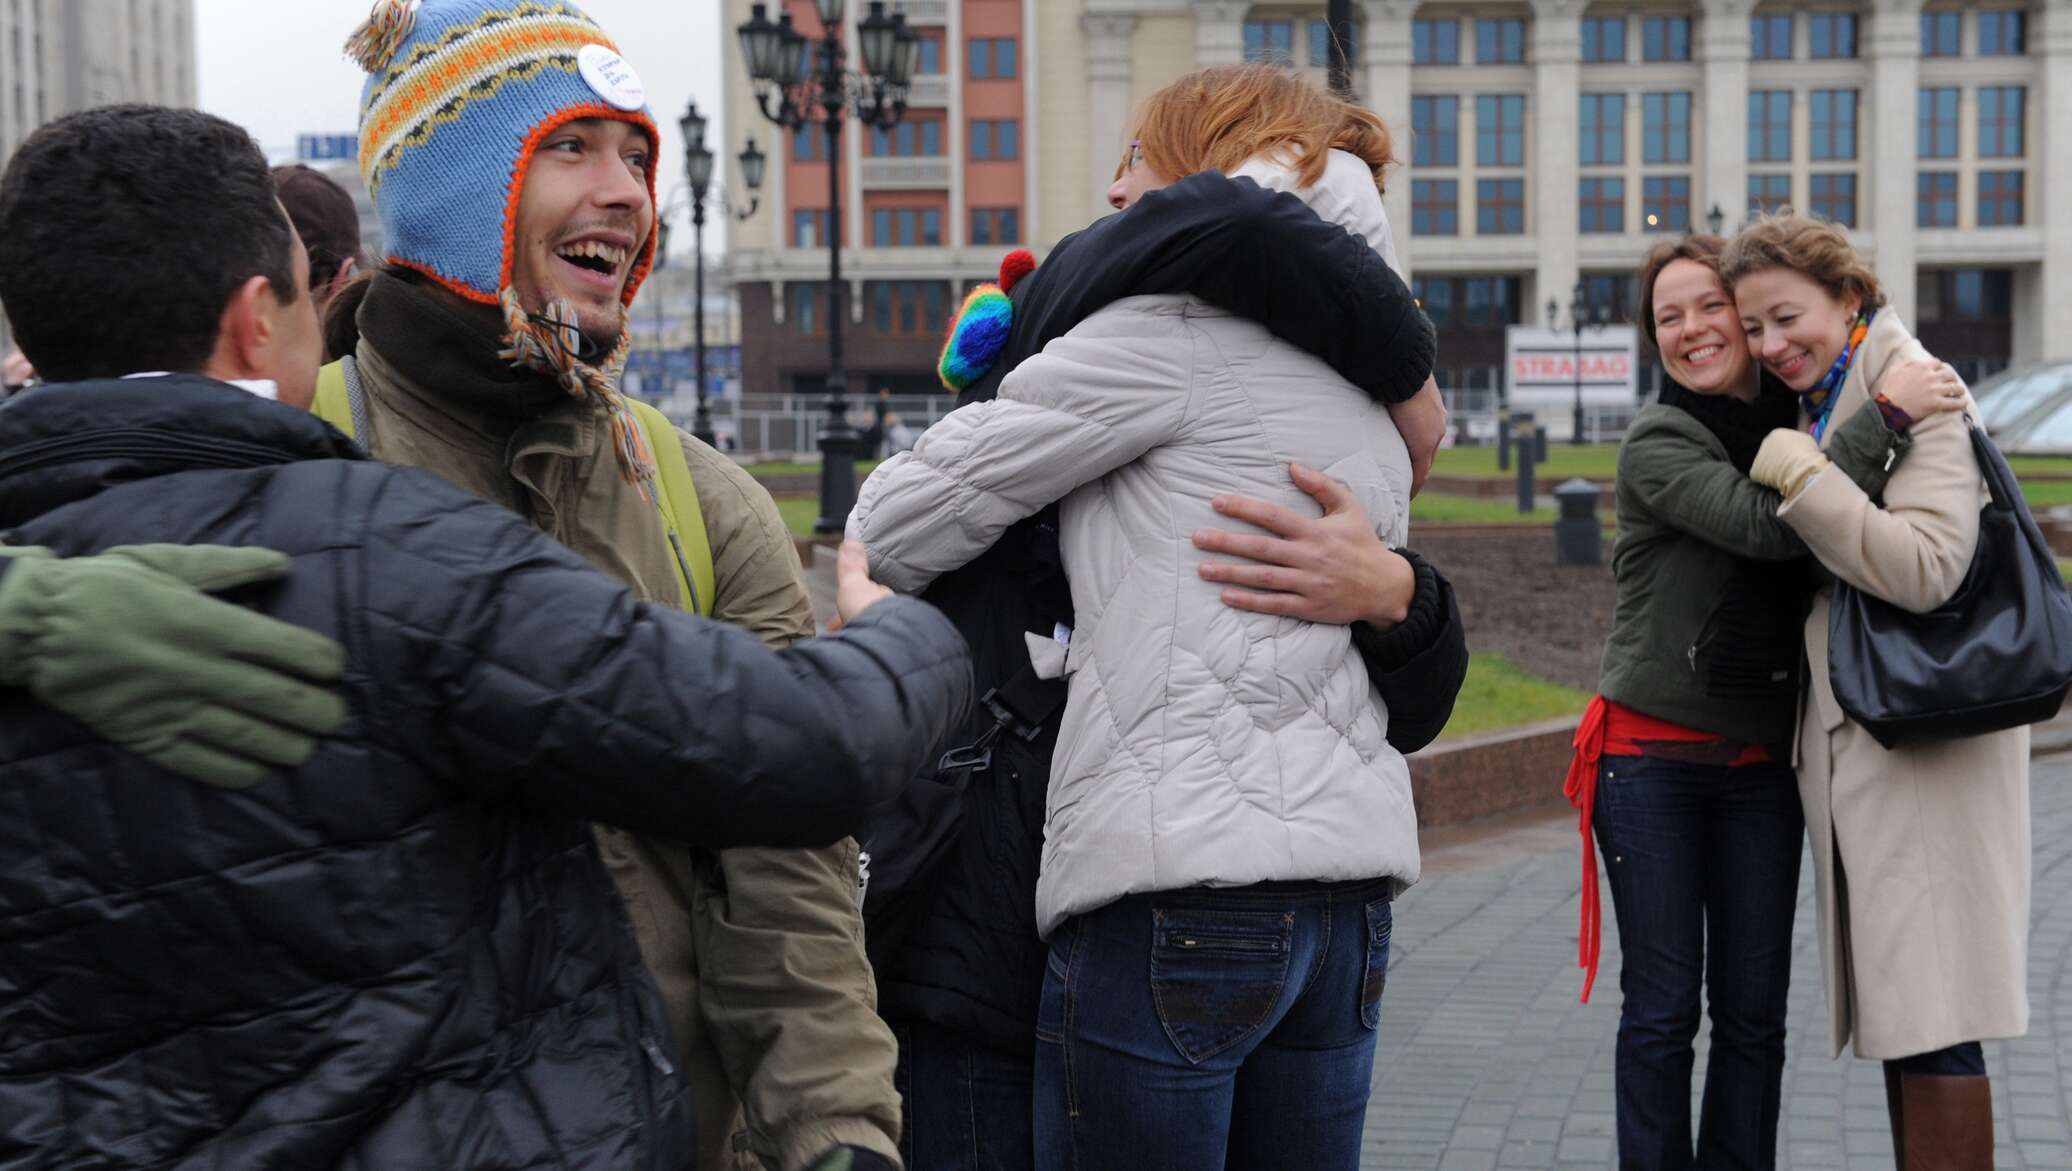 Обнял москва. Люди обнимаются на улице. День объятий. Дружелюбные люди в России. Люди на празднике обнимаются.